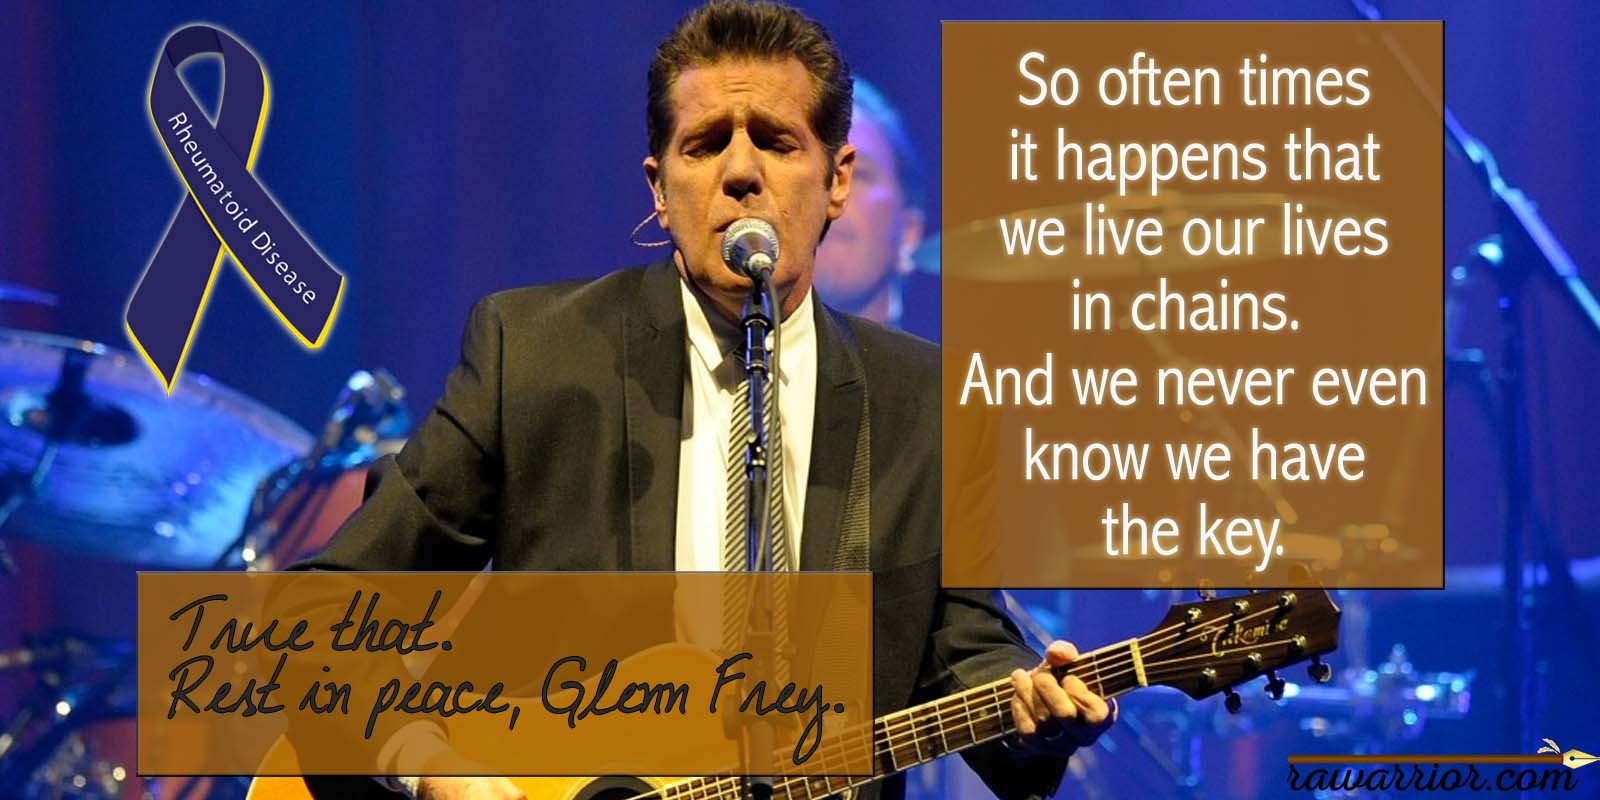 Glenn Frey's cause of death